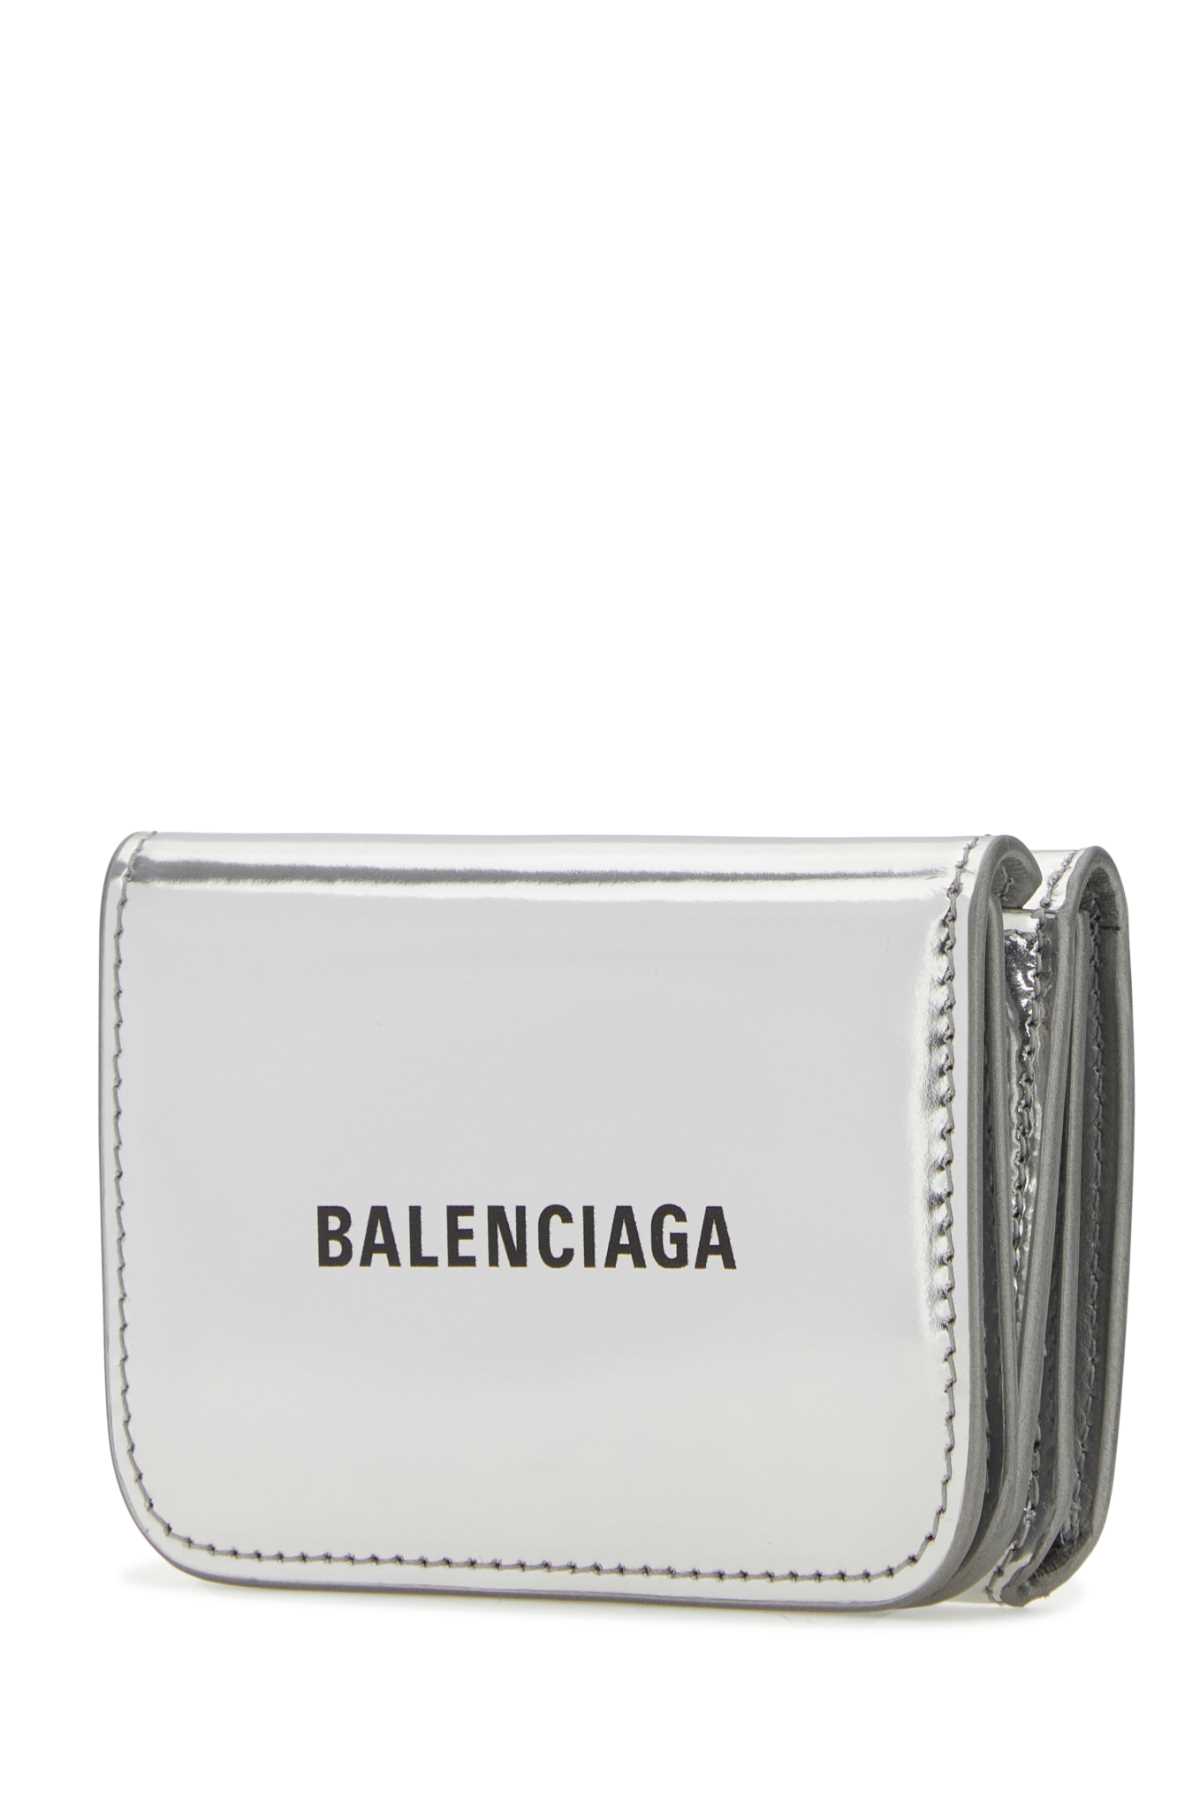 Balenciaga Silver Leather Wallet In 8160